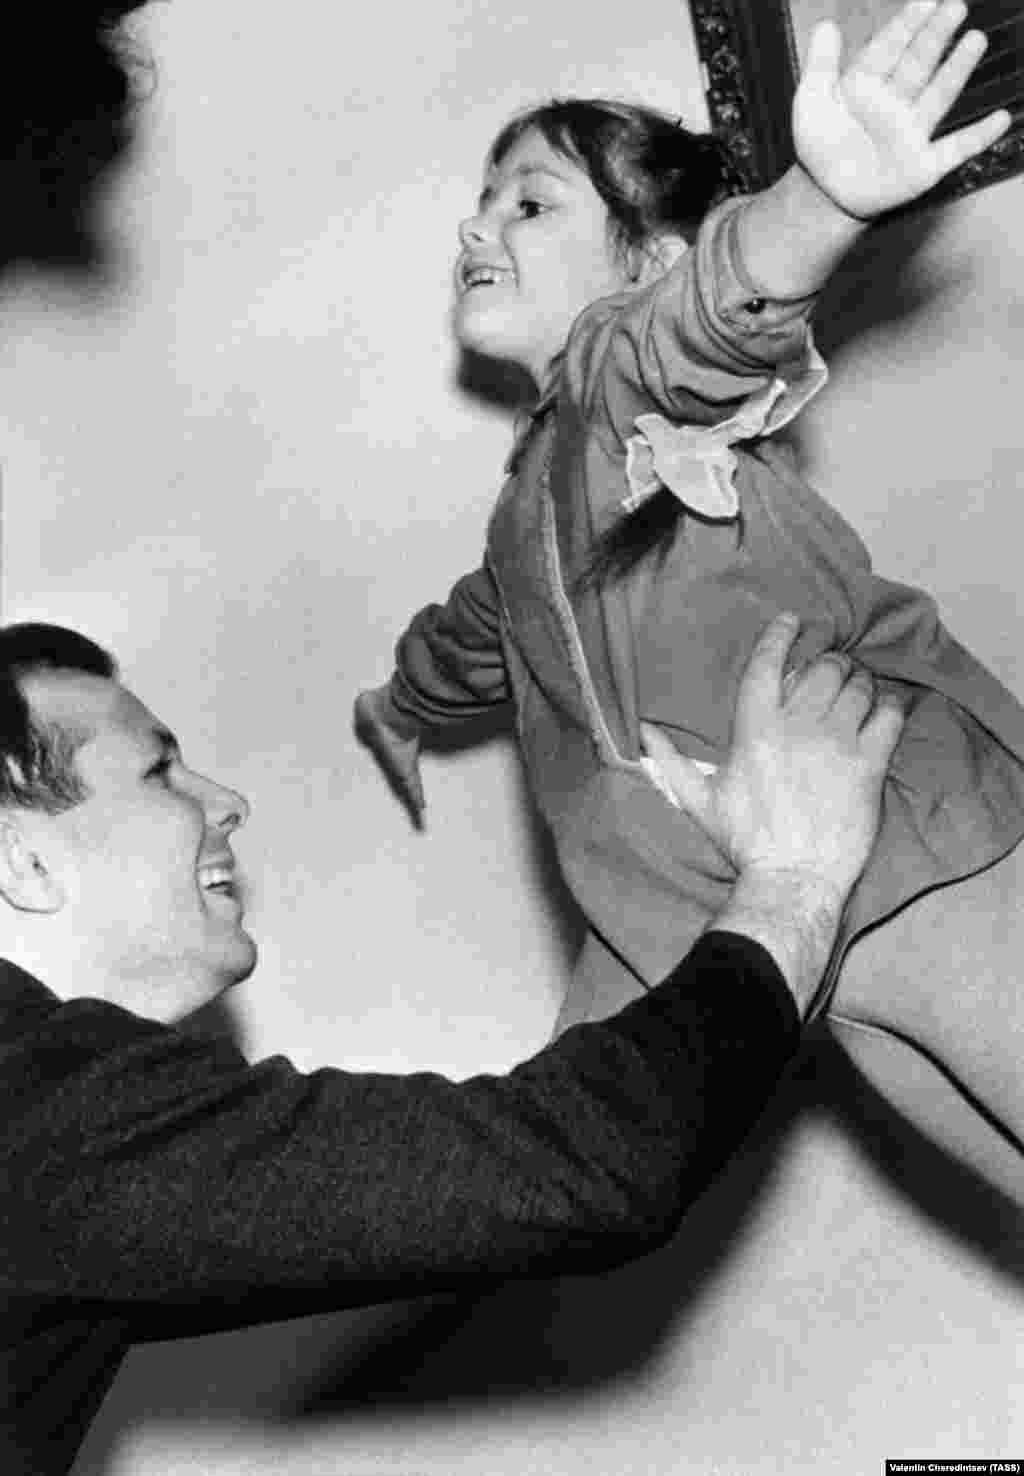 Gagarin a lányával, Jelenával otthon 1964 májusában.